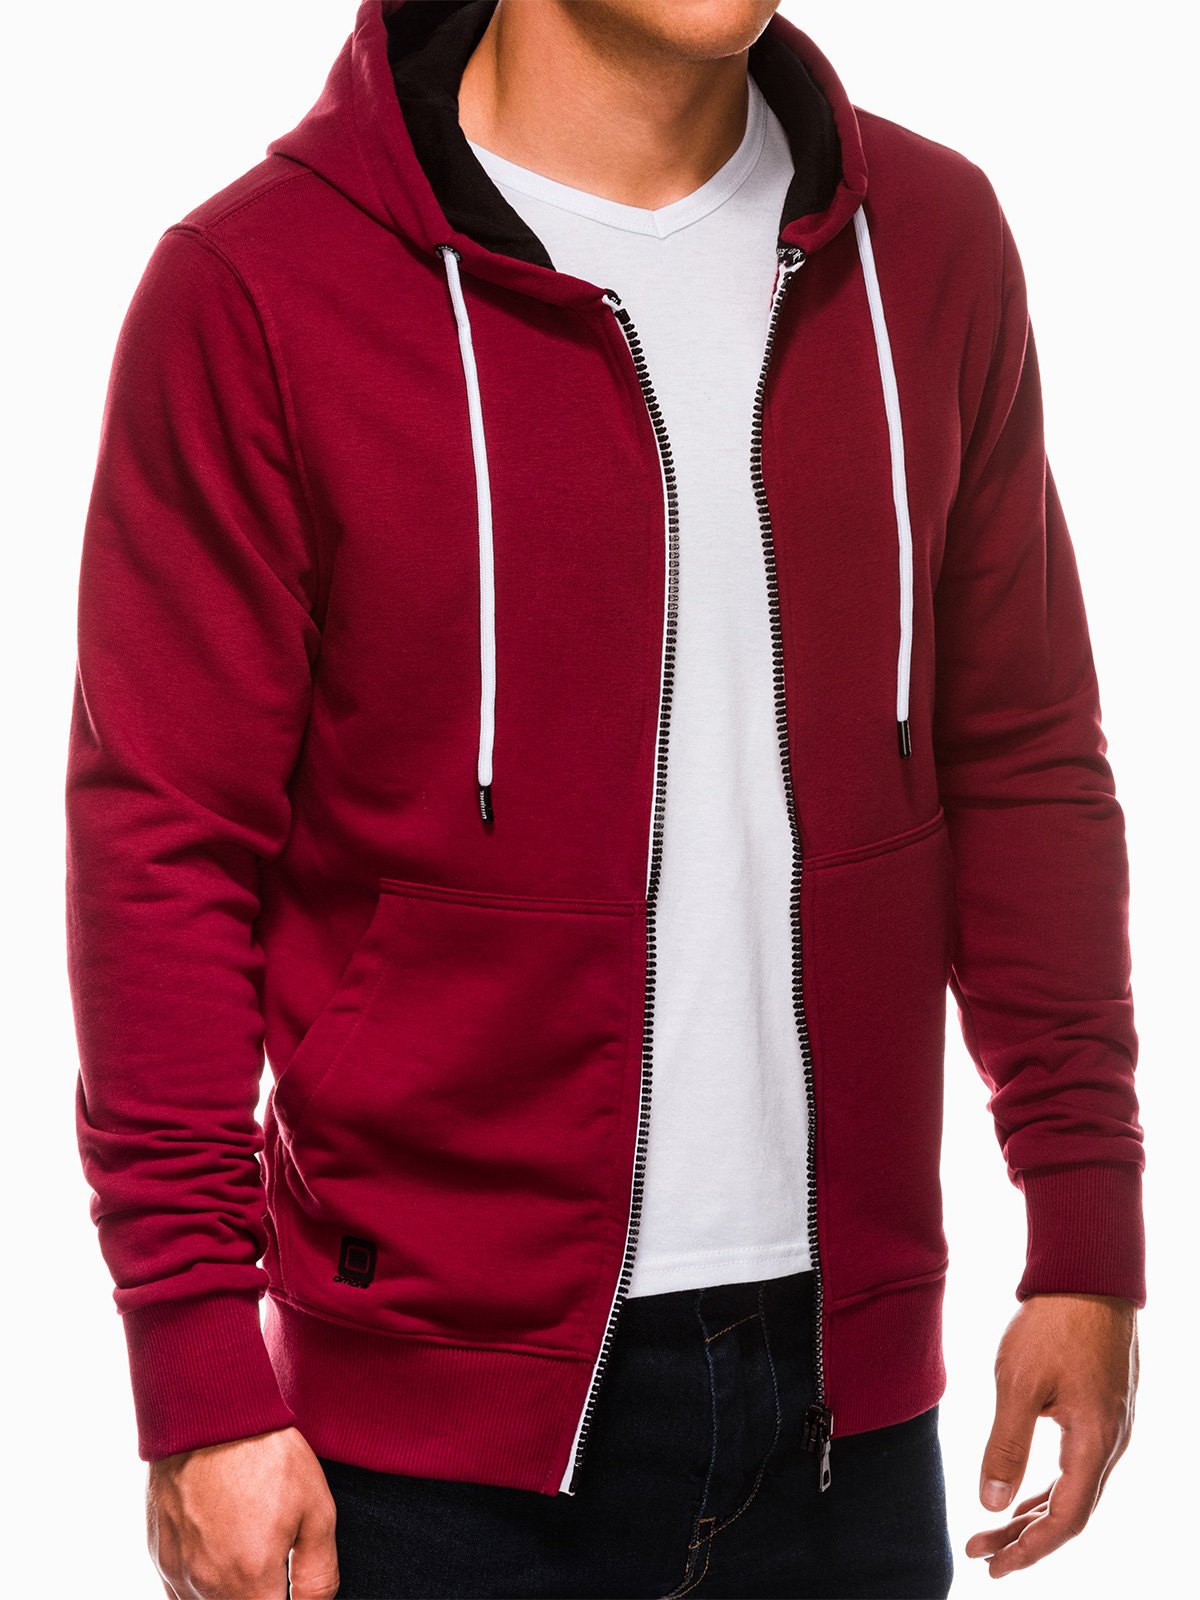 Men's zip-up sweatshirt B976 - dark red 